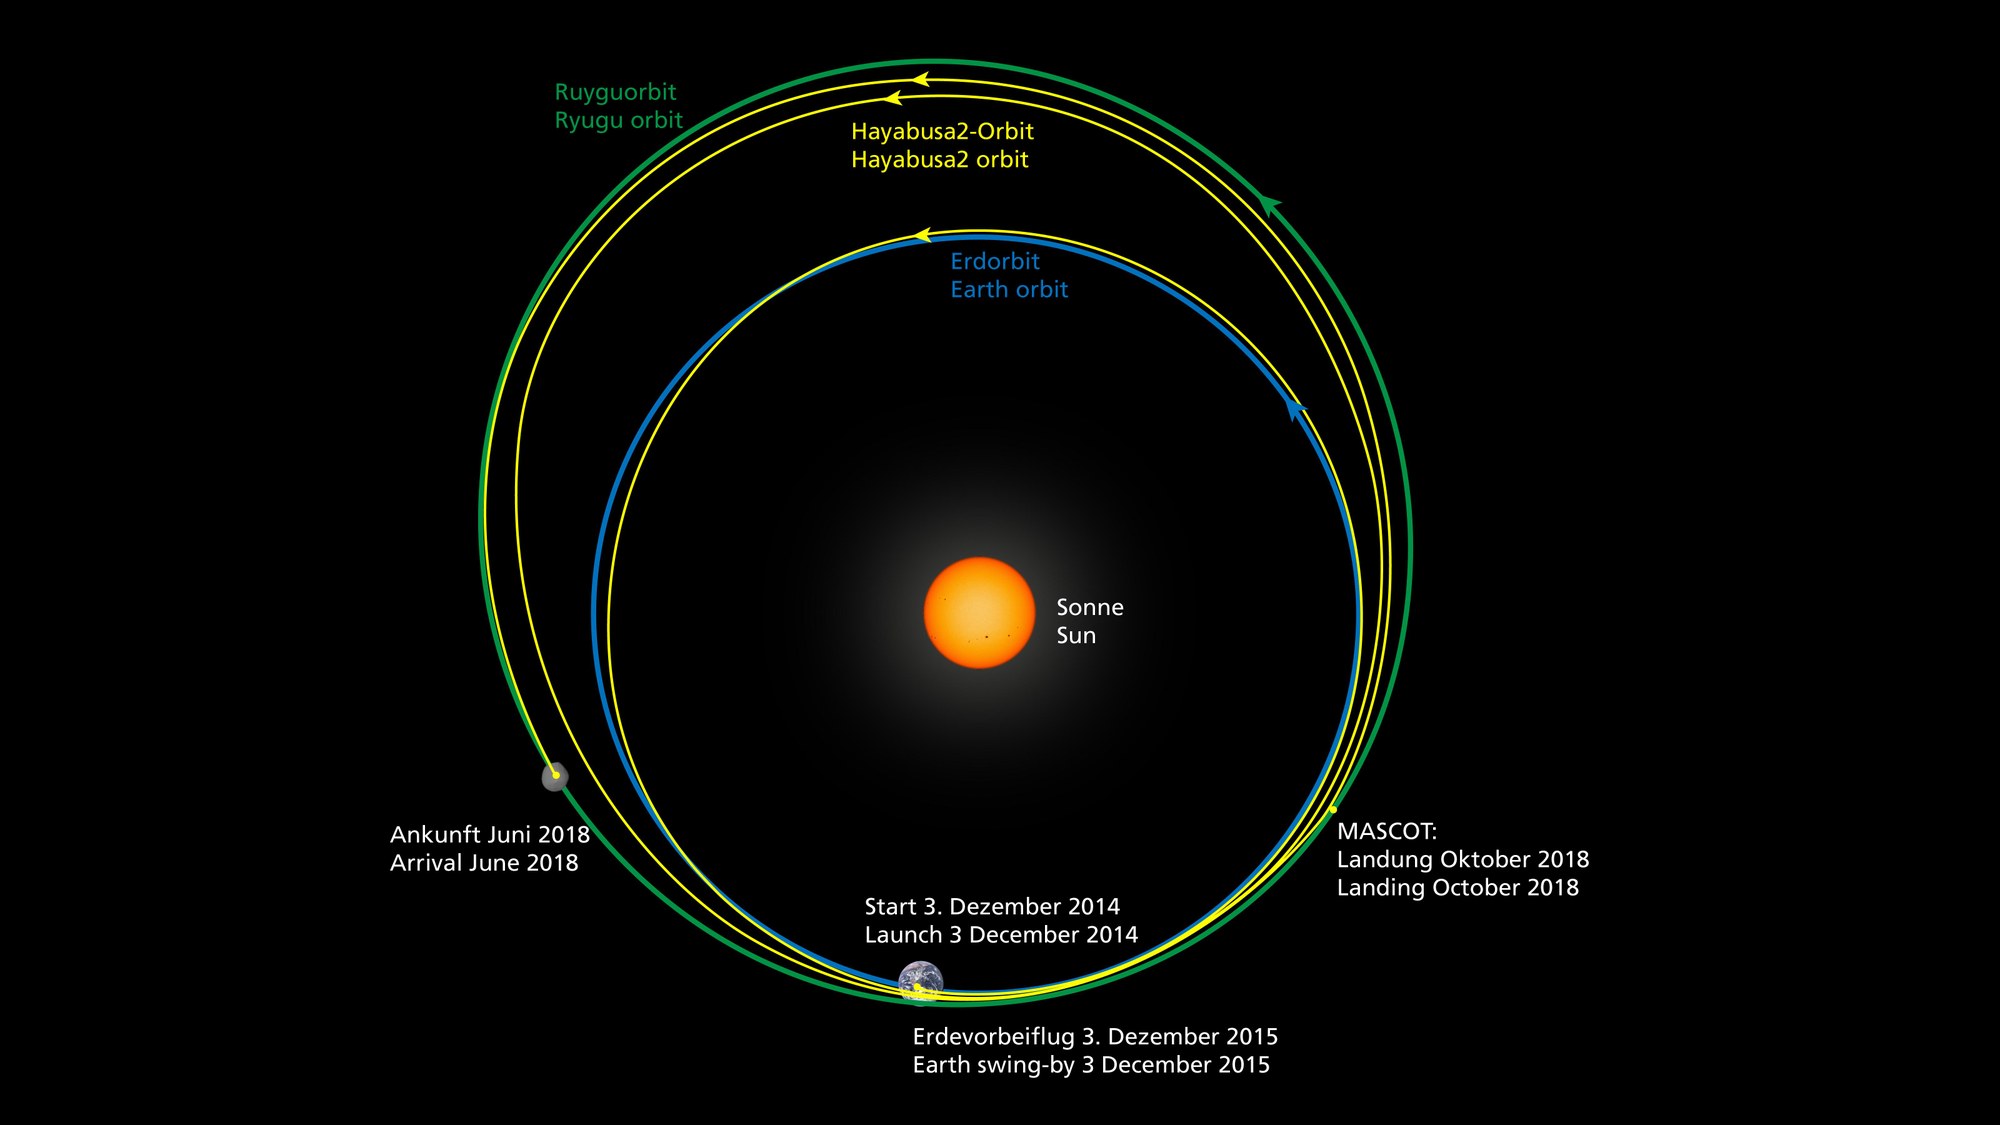 Der Weg von Hayabusa2 von der Erde zum Asteroid Ryugu